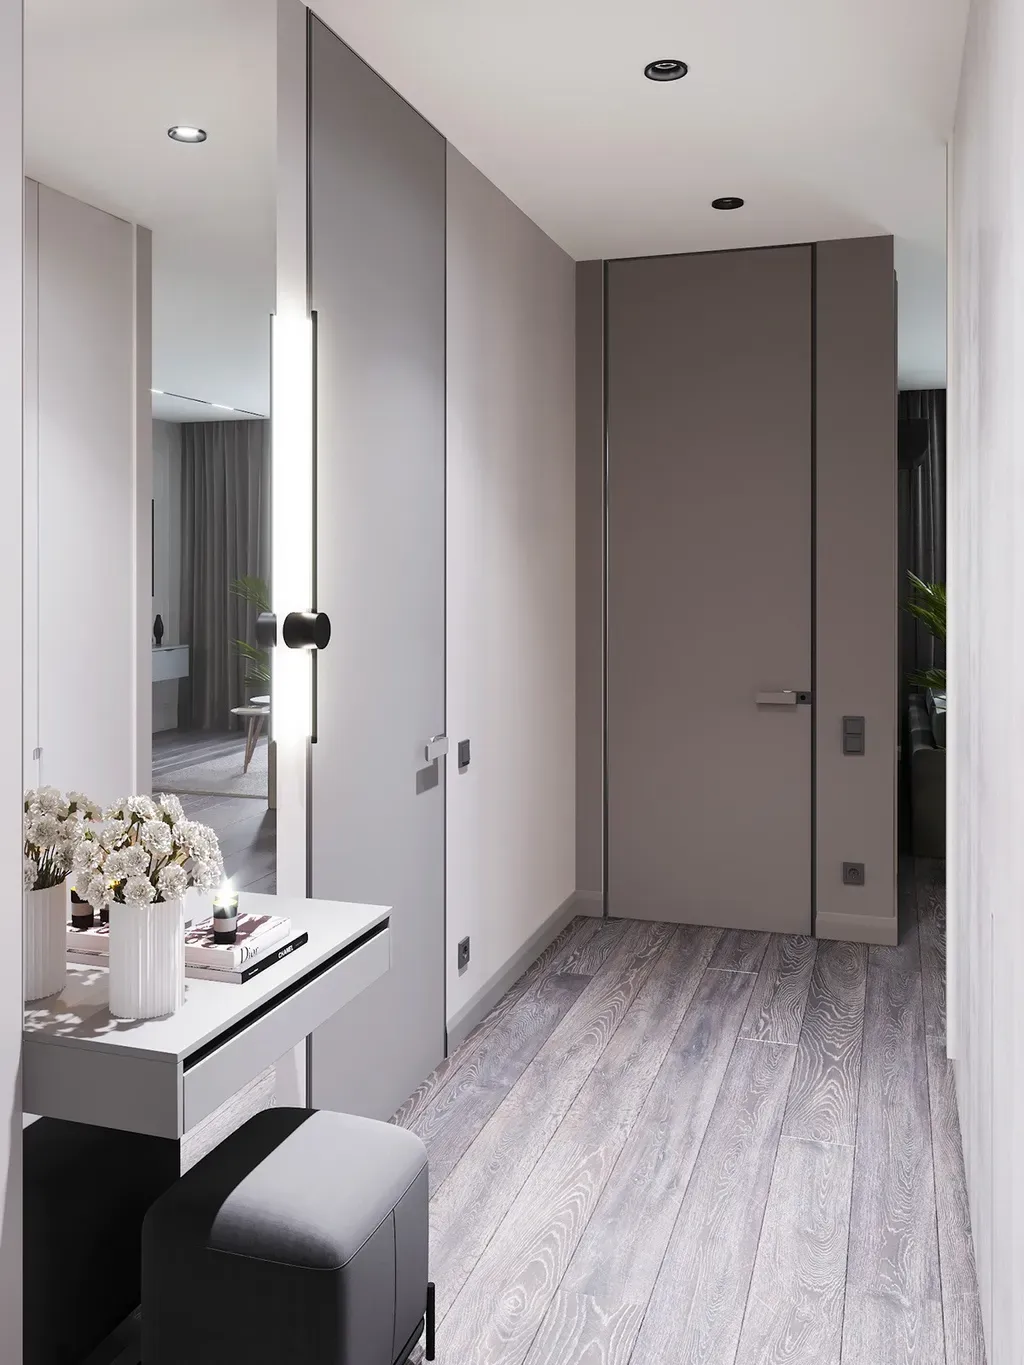 Phòng thay đồ - Concept căn hộ - Phong cách Neo Classic & Minimalism số 1  | Space T